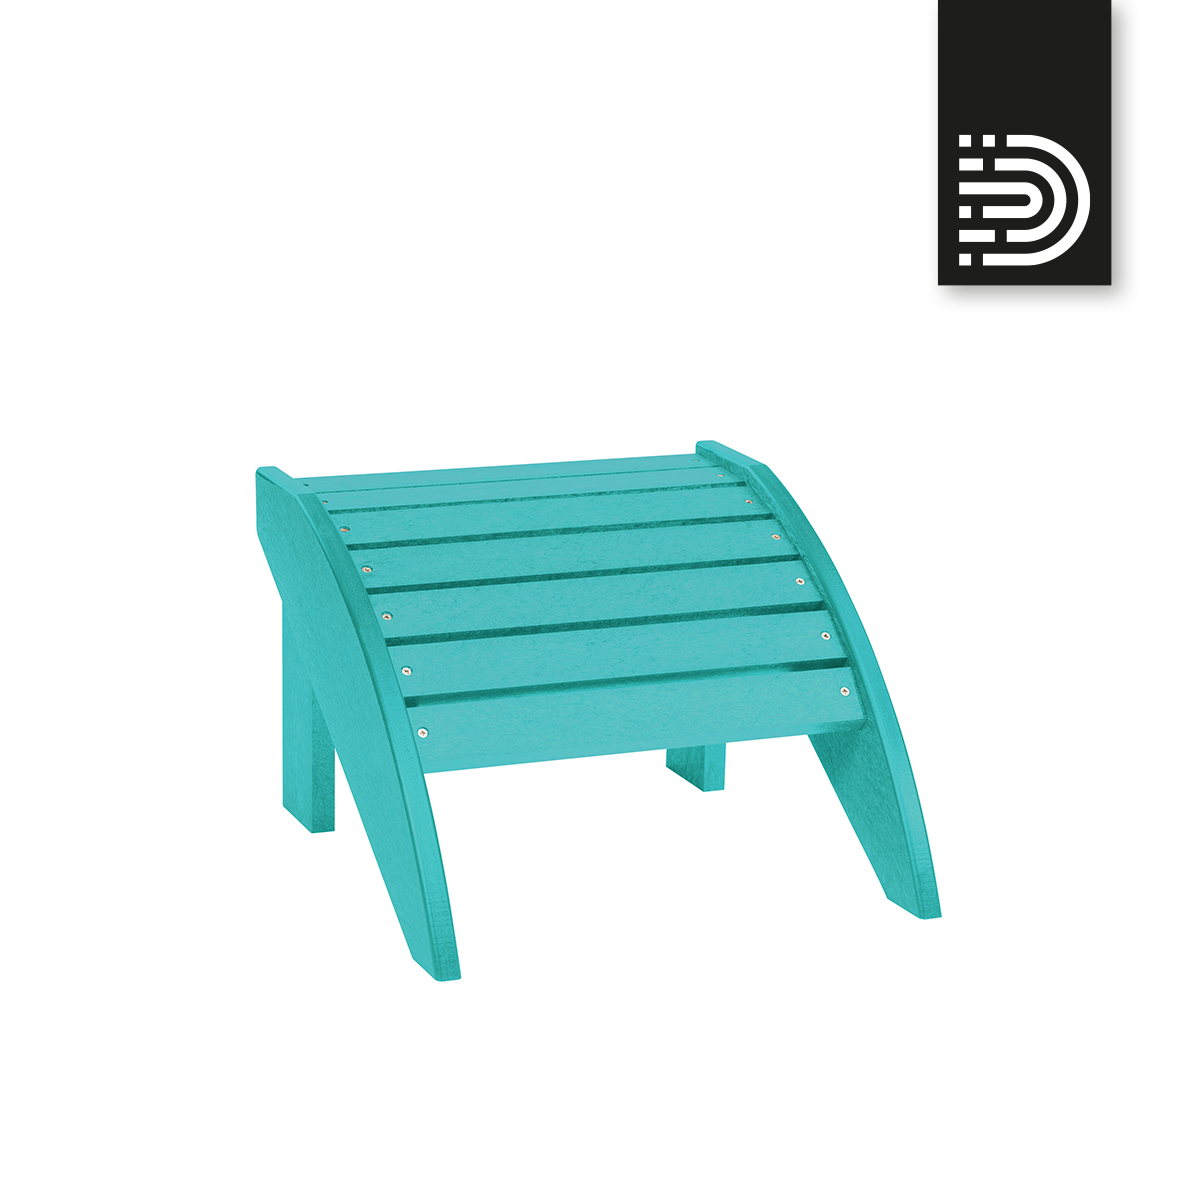 F01 Footstool - turquoise 09